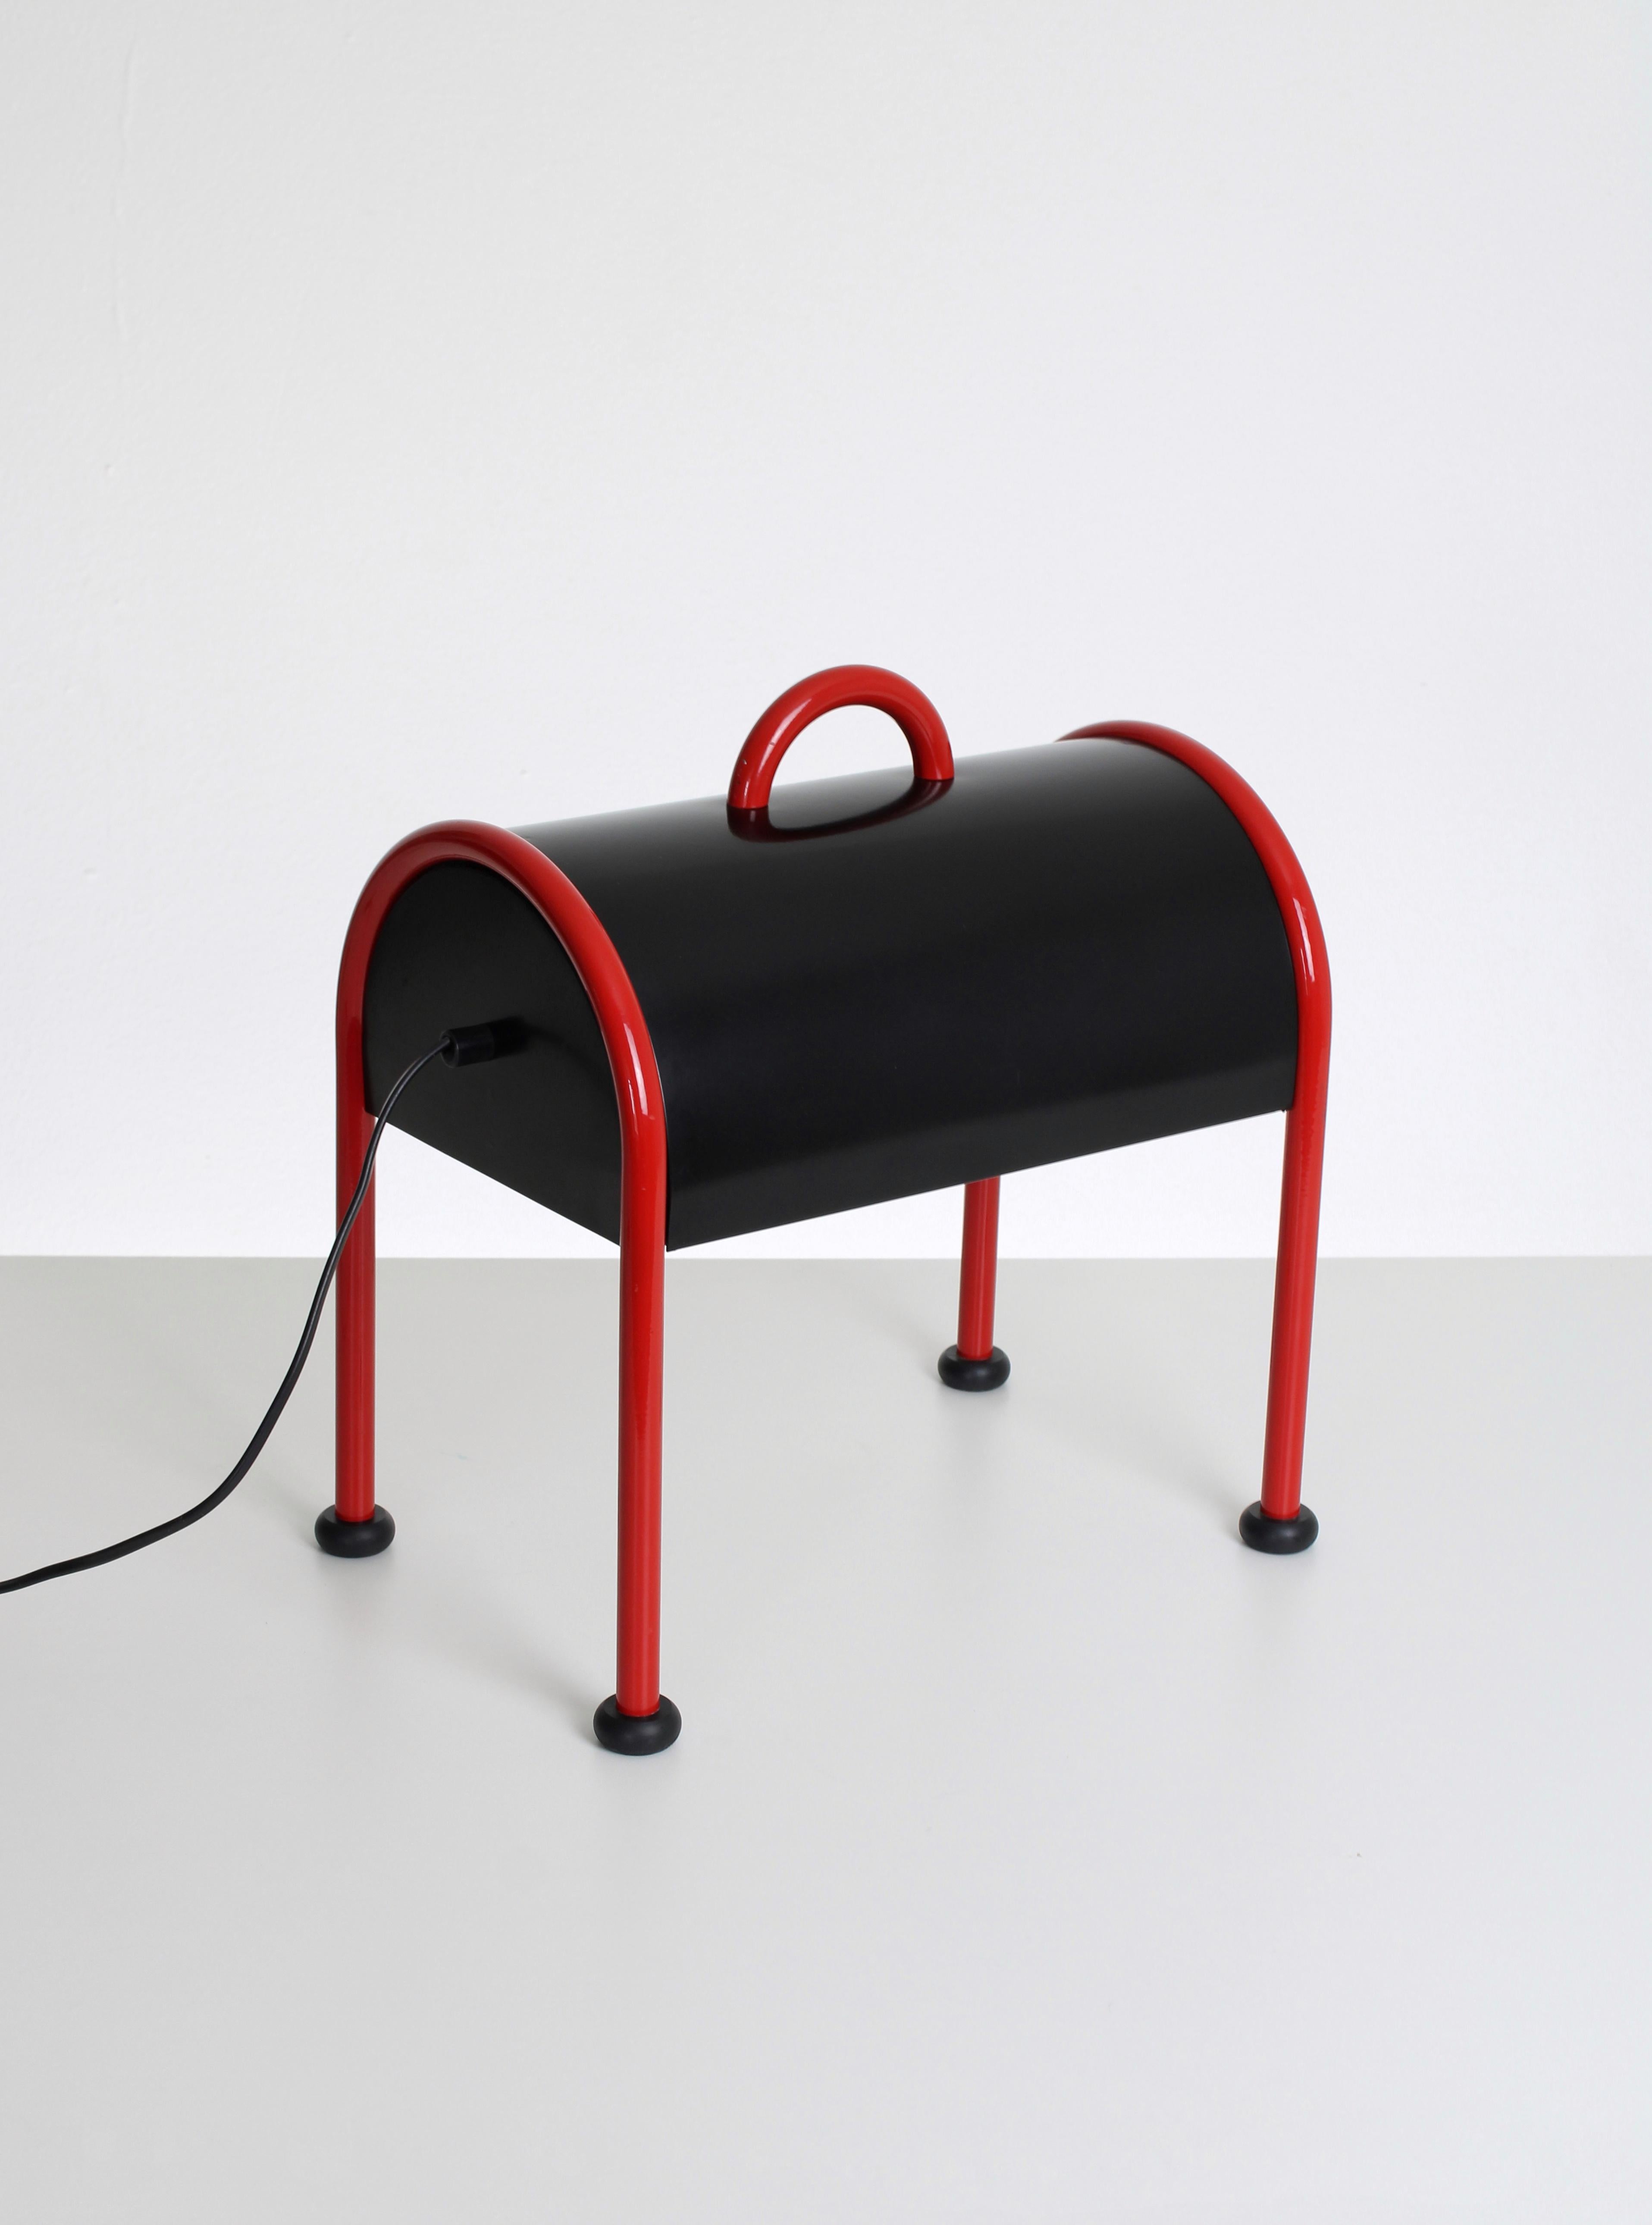 Vierbeinige Tischleuchte Modell Valigia. Diese seltsam geformte Tischleuchte ist einer der vielen Entwürfe von Ettore Sottsass. Inspiriert von der Idee einer einfachen Aktentasche. Die Tischleuchte Valigia ist eine Ikone des italienischen Designs,